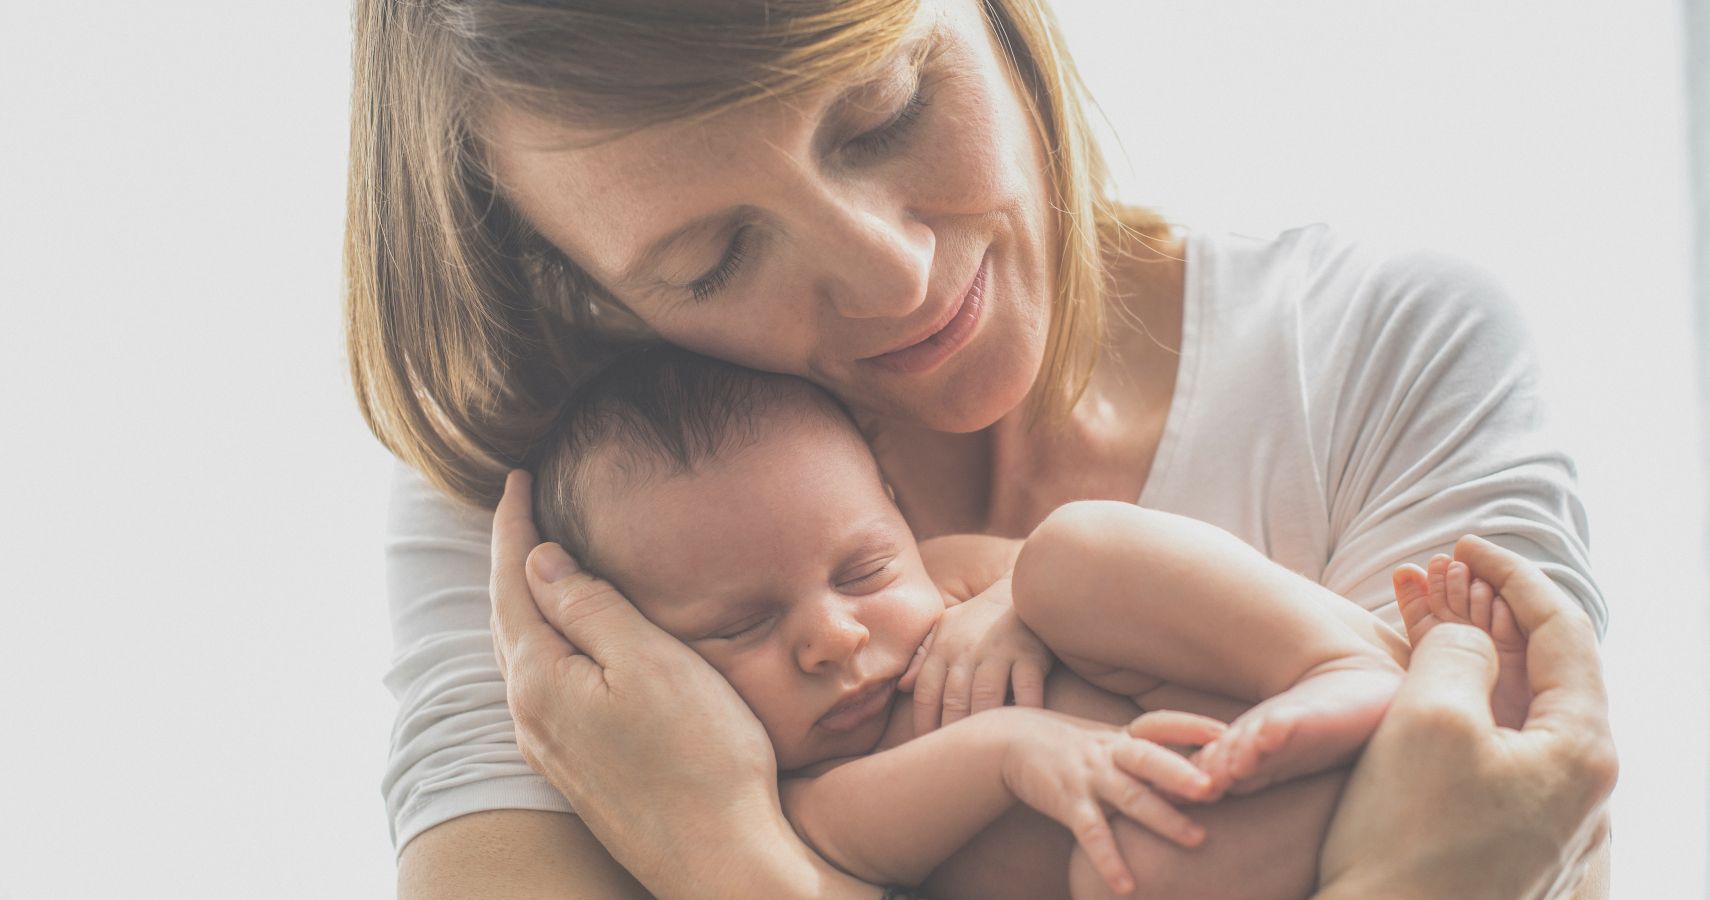 Newborn Screening Awareness mom holding their baby